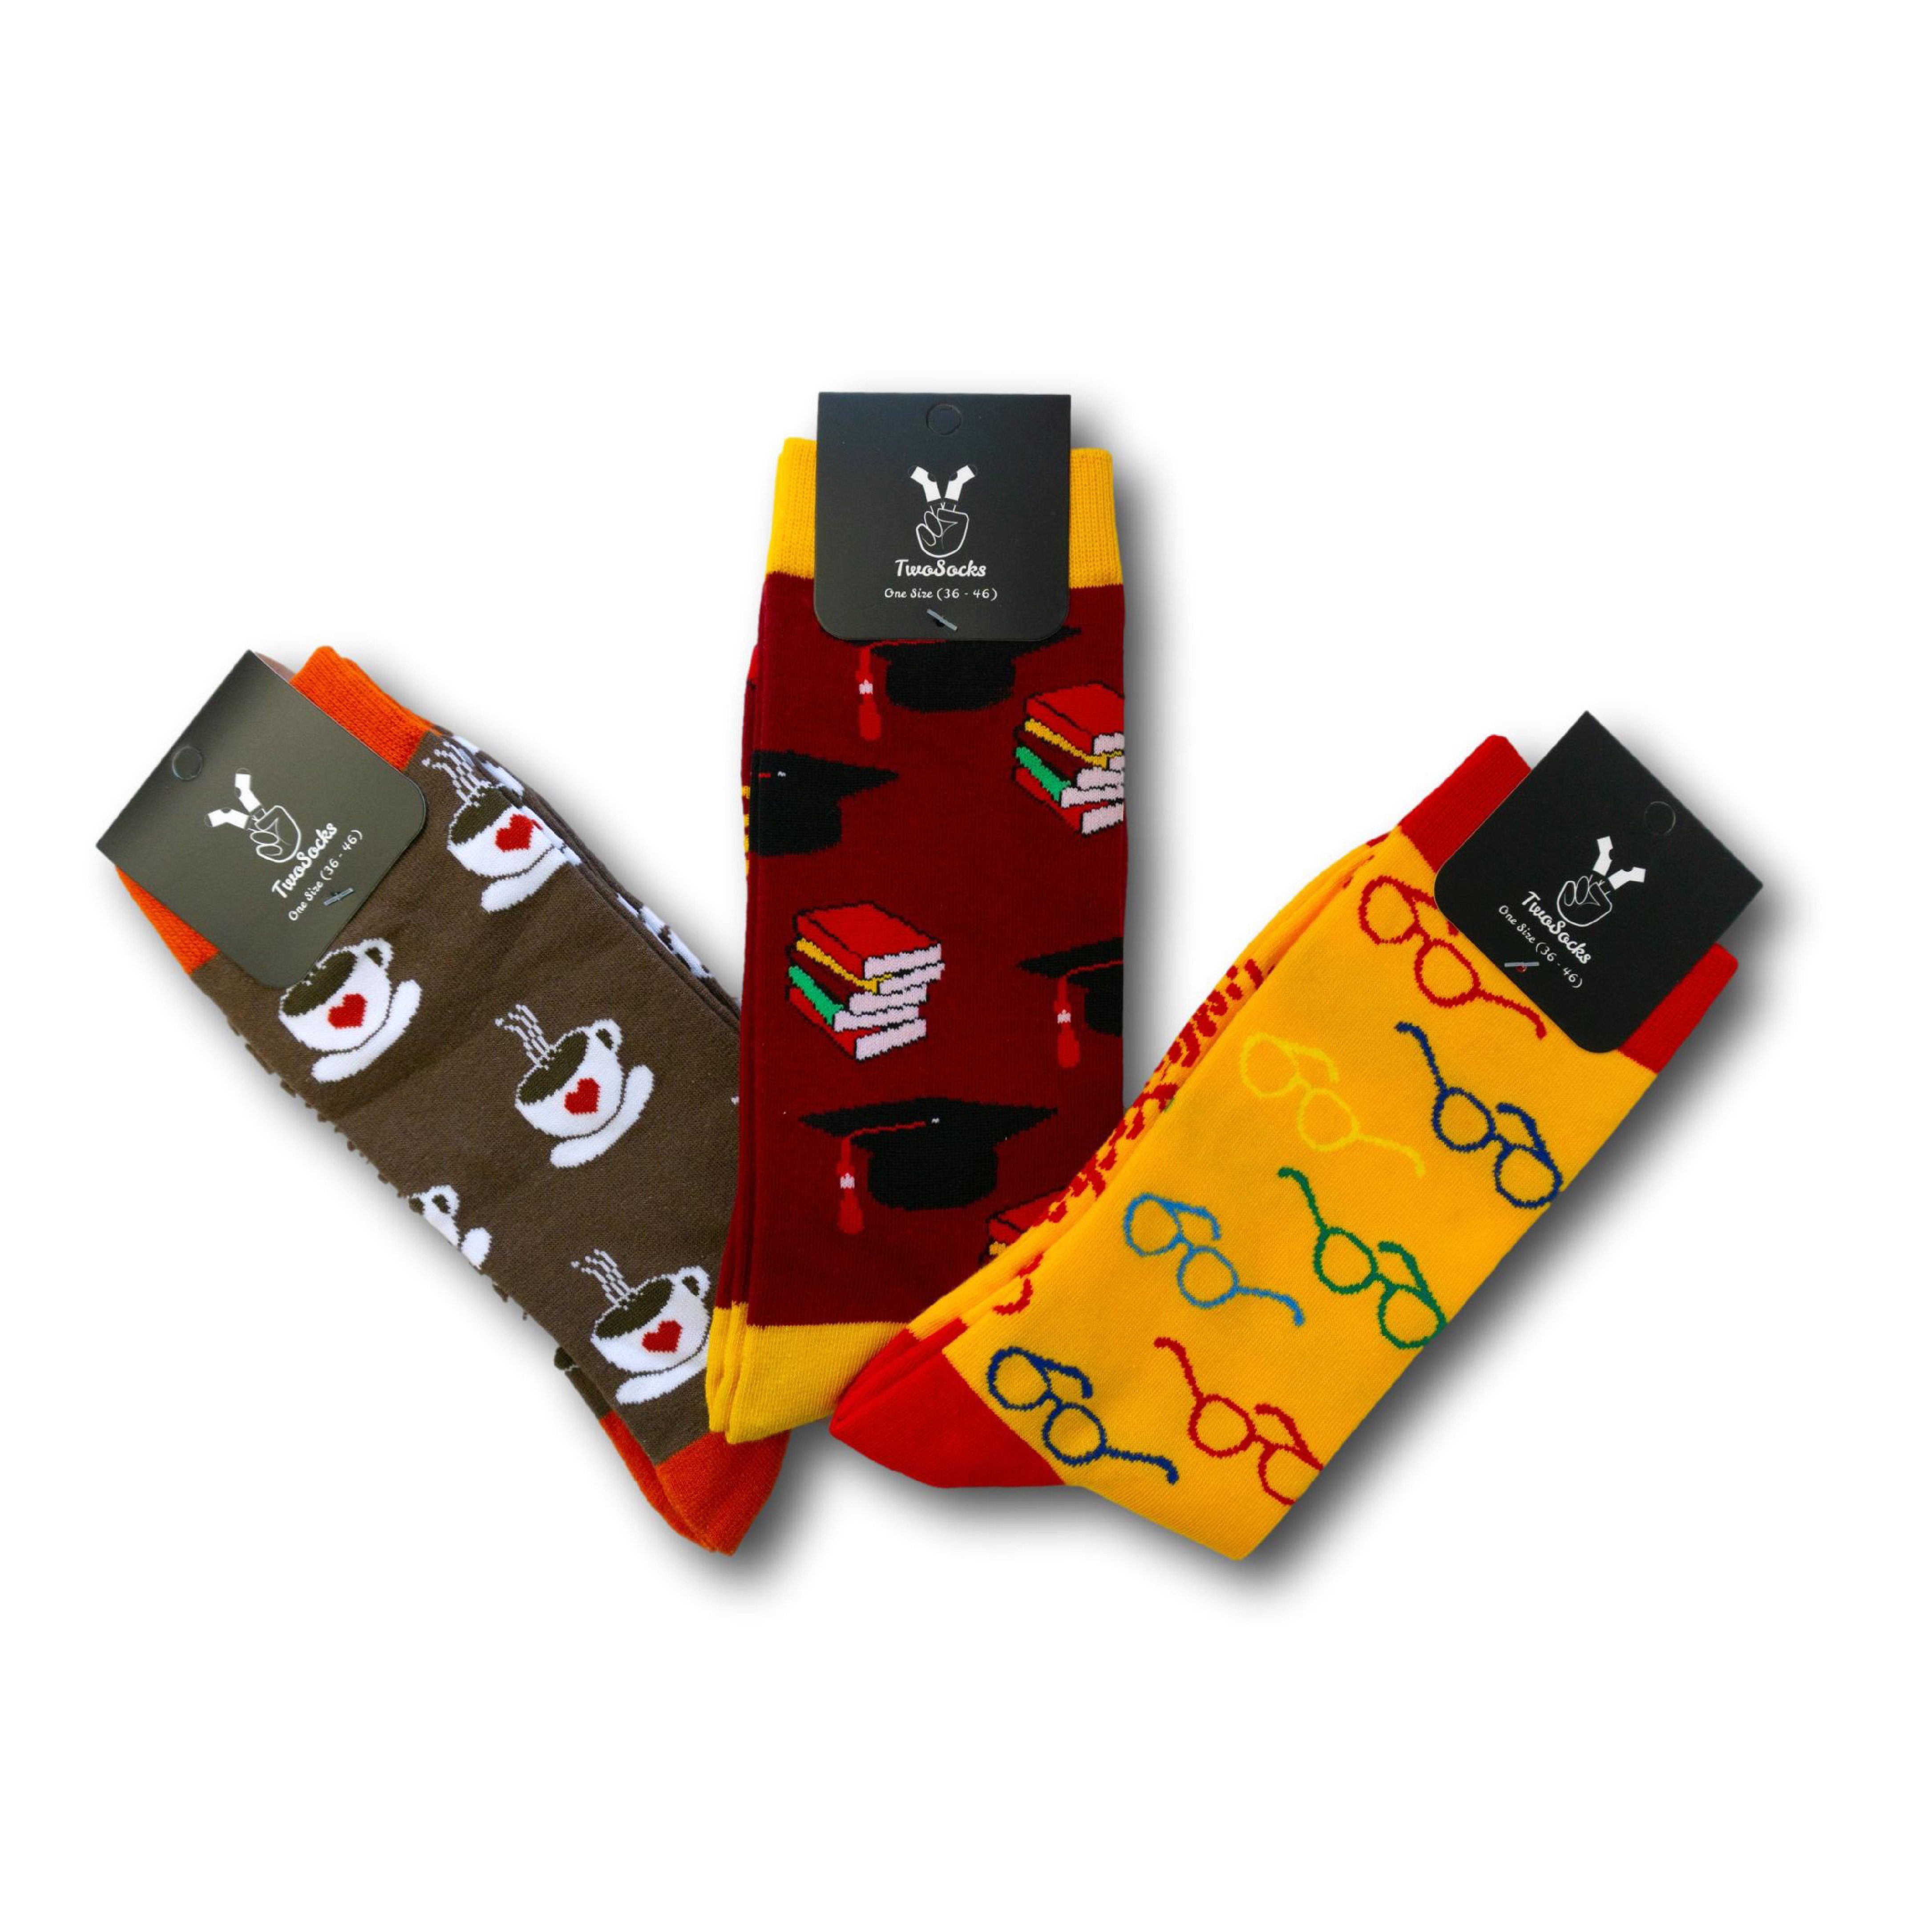 TwoSocks Freizeitsocken Lustige Socken mit Studenten, Brille, Kaffee Motiv, Einheitsgröße (Set, 3 Paar) 3er Pack | Kompressionsstrümpfe